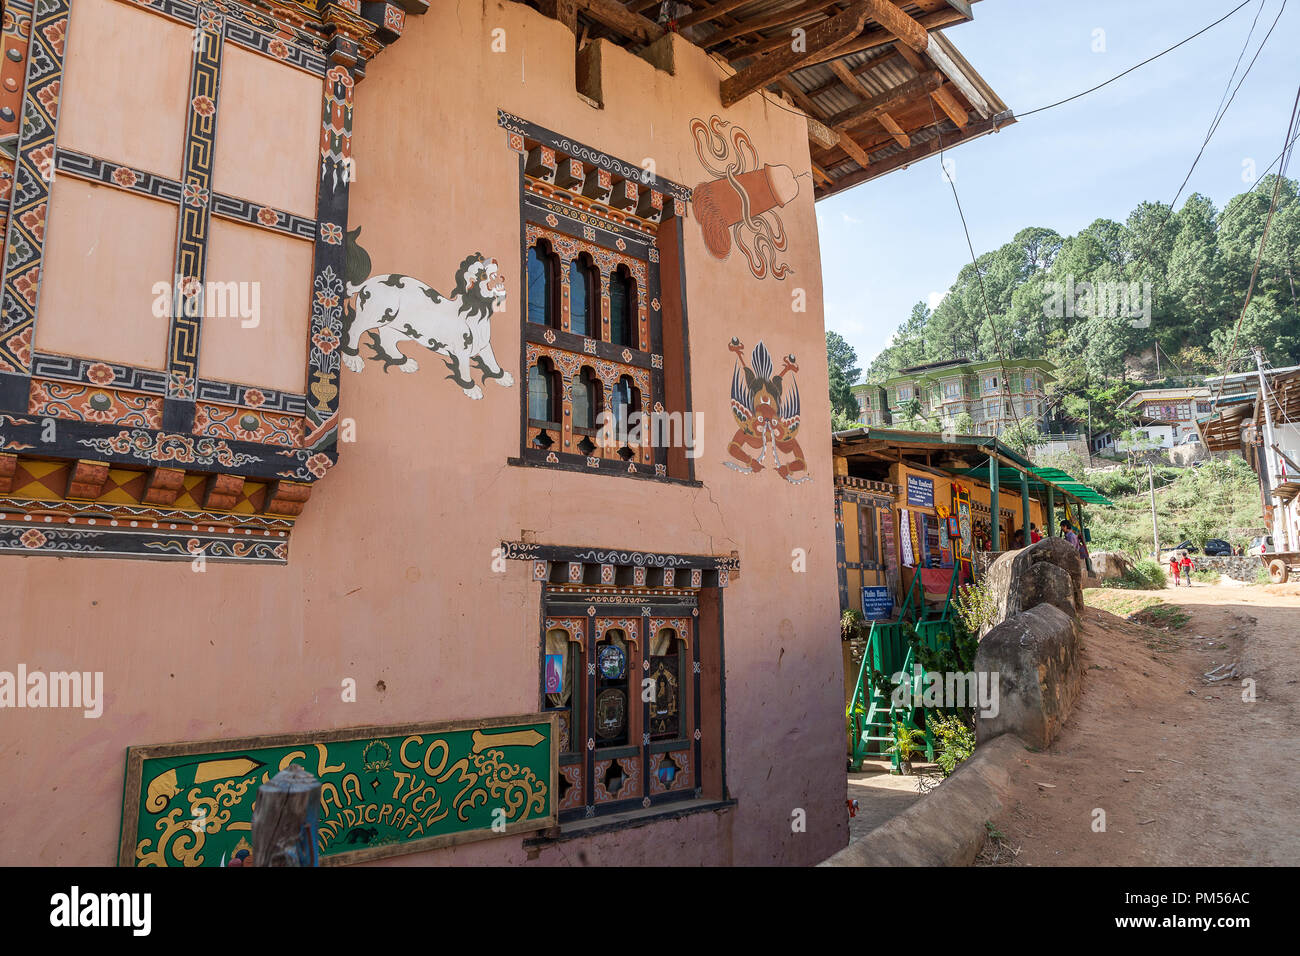 Gemälde Pana Dorf in der Nähe der Tempel der göttlichen Verrückter, Tempel der Fruchtbarkeit. Gemeinsame Gemälde an den Außenwänden der bhutanischen Haus. Bhuta Stockfoto